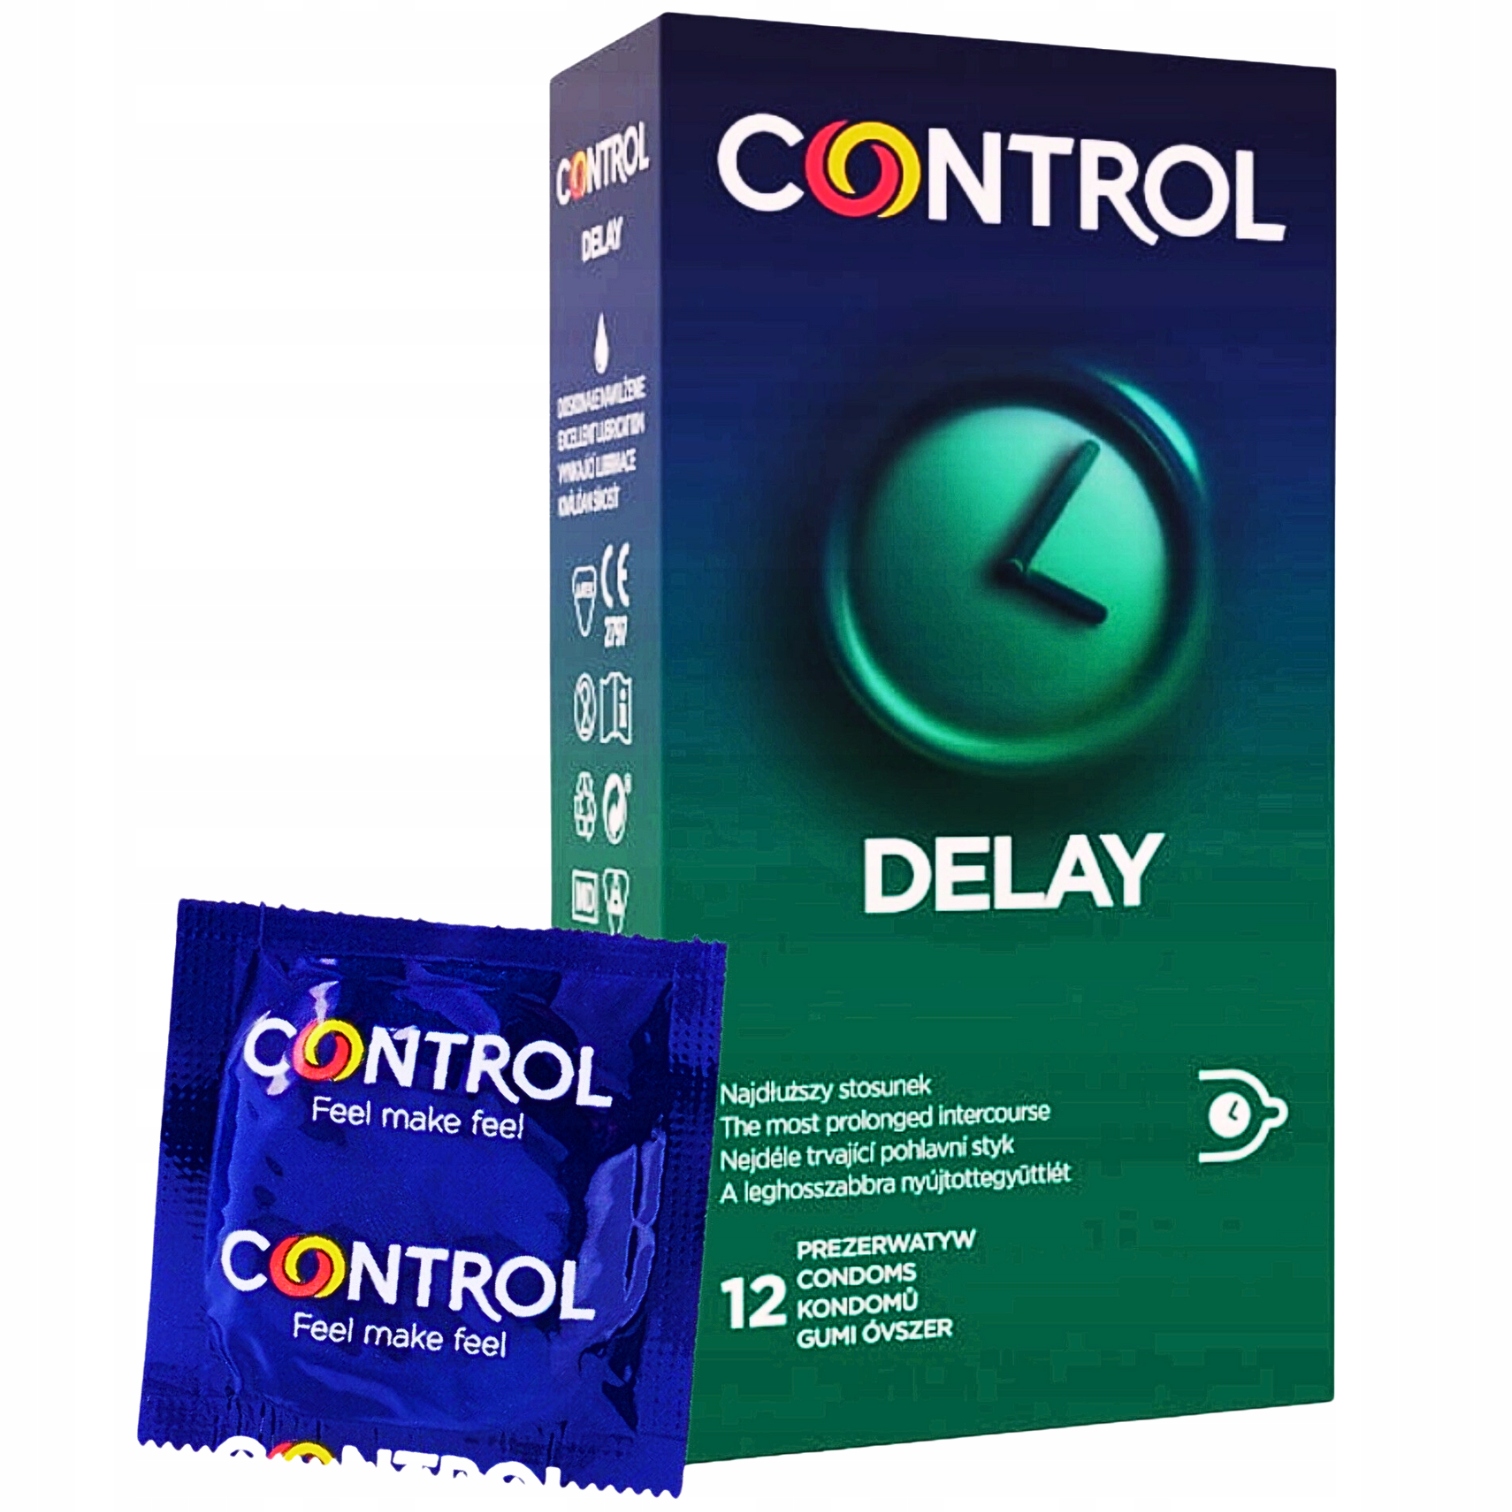 Control Delay Opóźniające Wydłużają Sex 12 Szt 13463510617 Allegro Pl